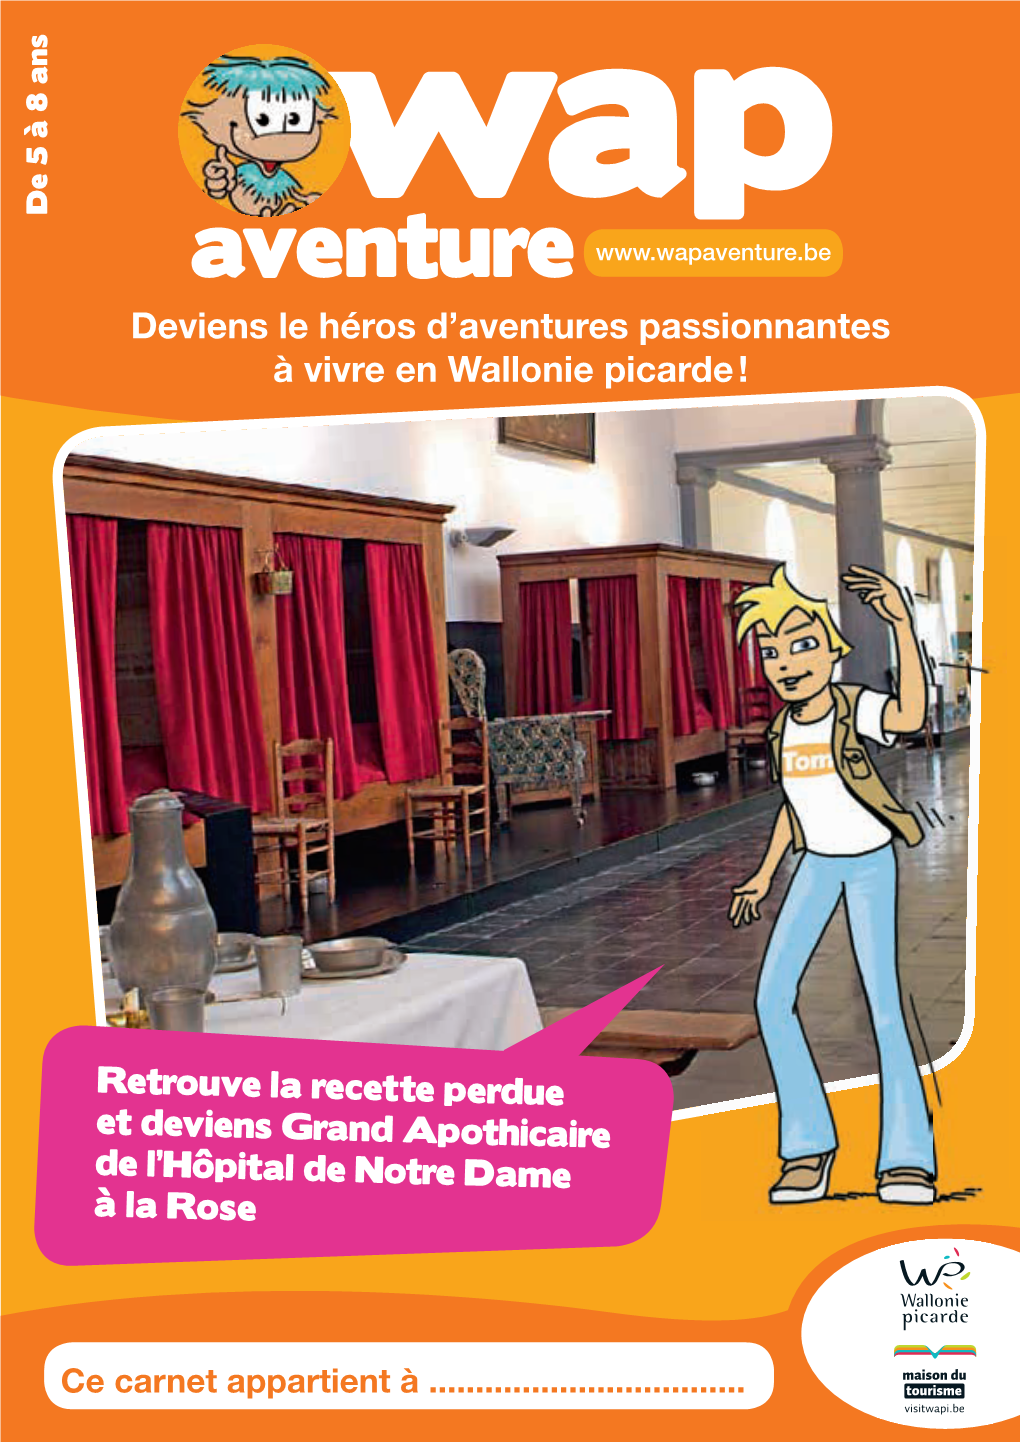 Deviens Le Héros D'aventures Passionnantes À Vivre En Wallonie Picarde !